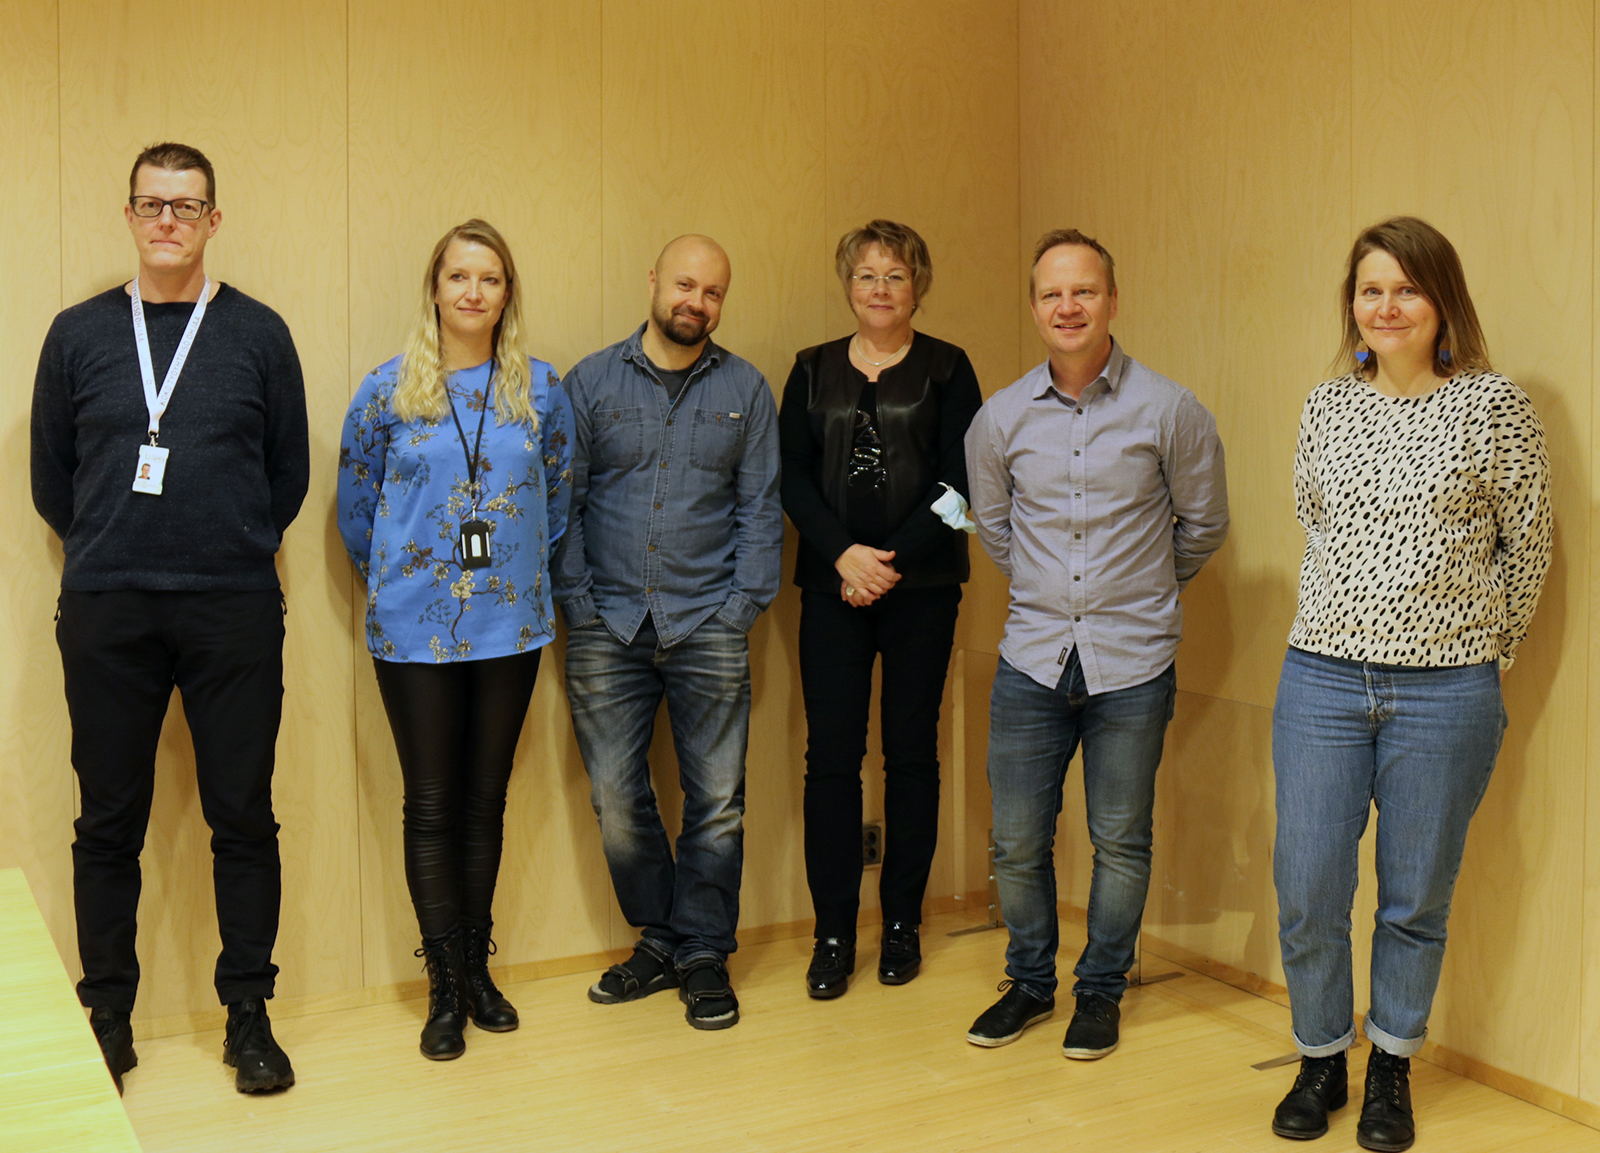 Hanketoimijat Heikki Alatalo, Päivi Jauhola, Jonne Miettunen, Mari Tikka, Pekka Tiitinen ja Petra Pudas seisovat rinnakkain ryhmäkuvassa.